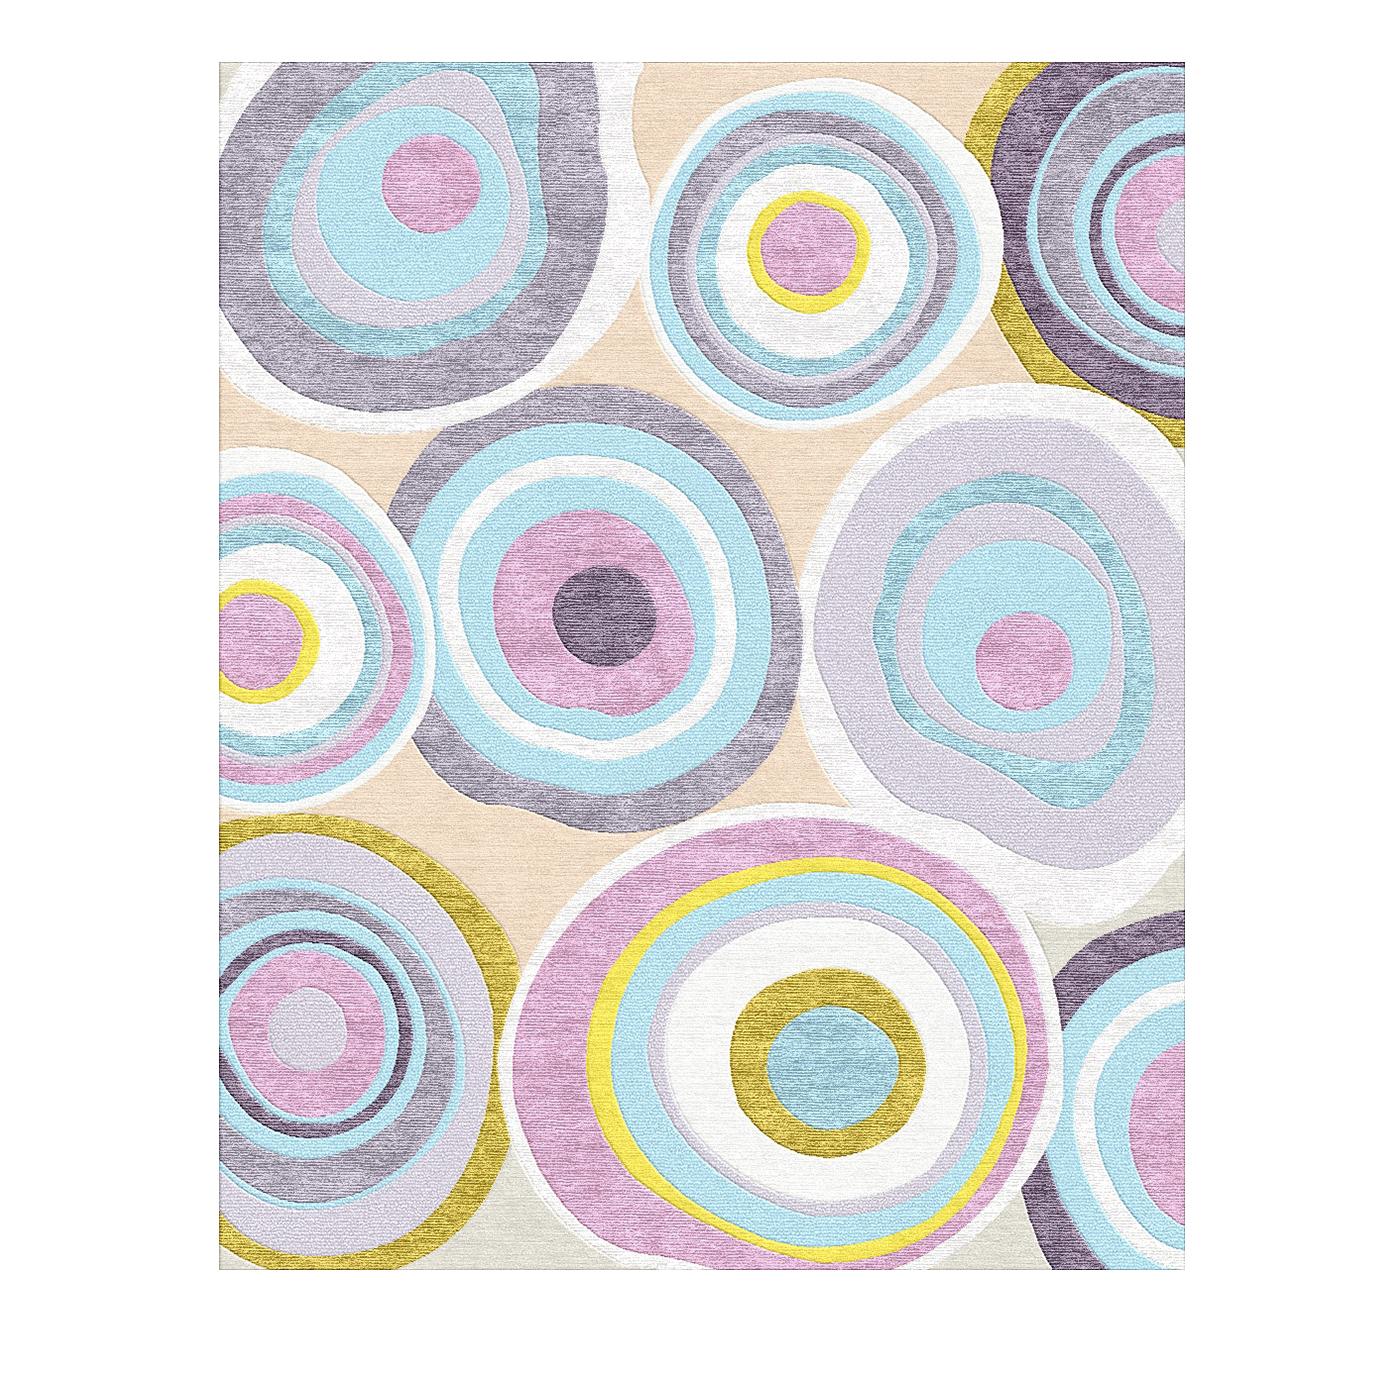 Dieser elegante Teppich besticht durch seine Schlichtheit und sein skurriles Muster aus bunten, unregelmäßig geformten, konzentrischen Kreisen. Das Stück zeichnet sich durch seine dynamischen Kombinationen aus hellen Pastellfarben wie Lavendel,